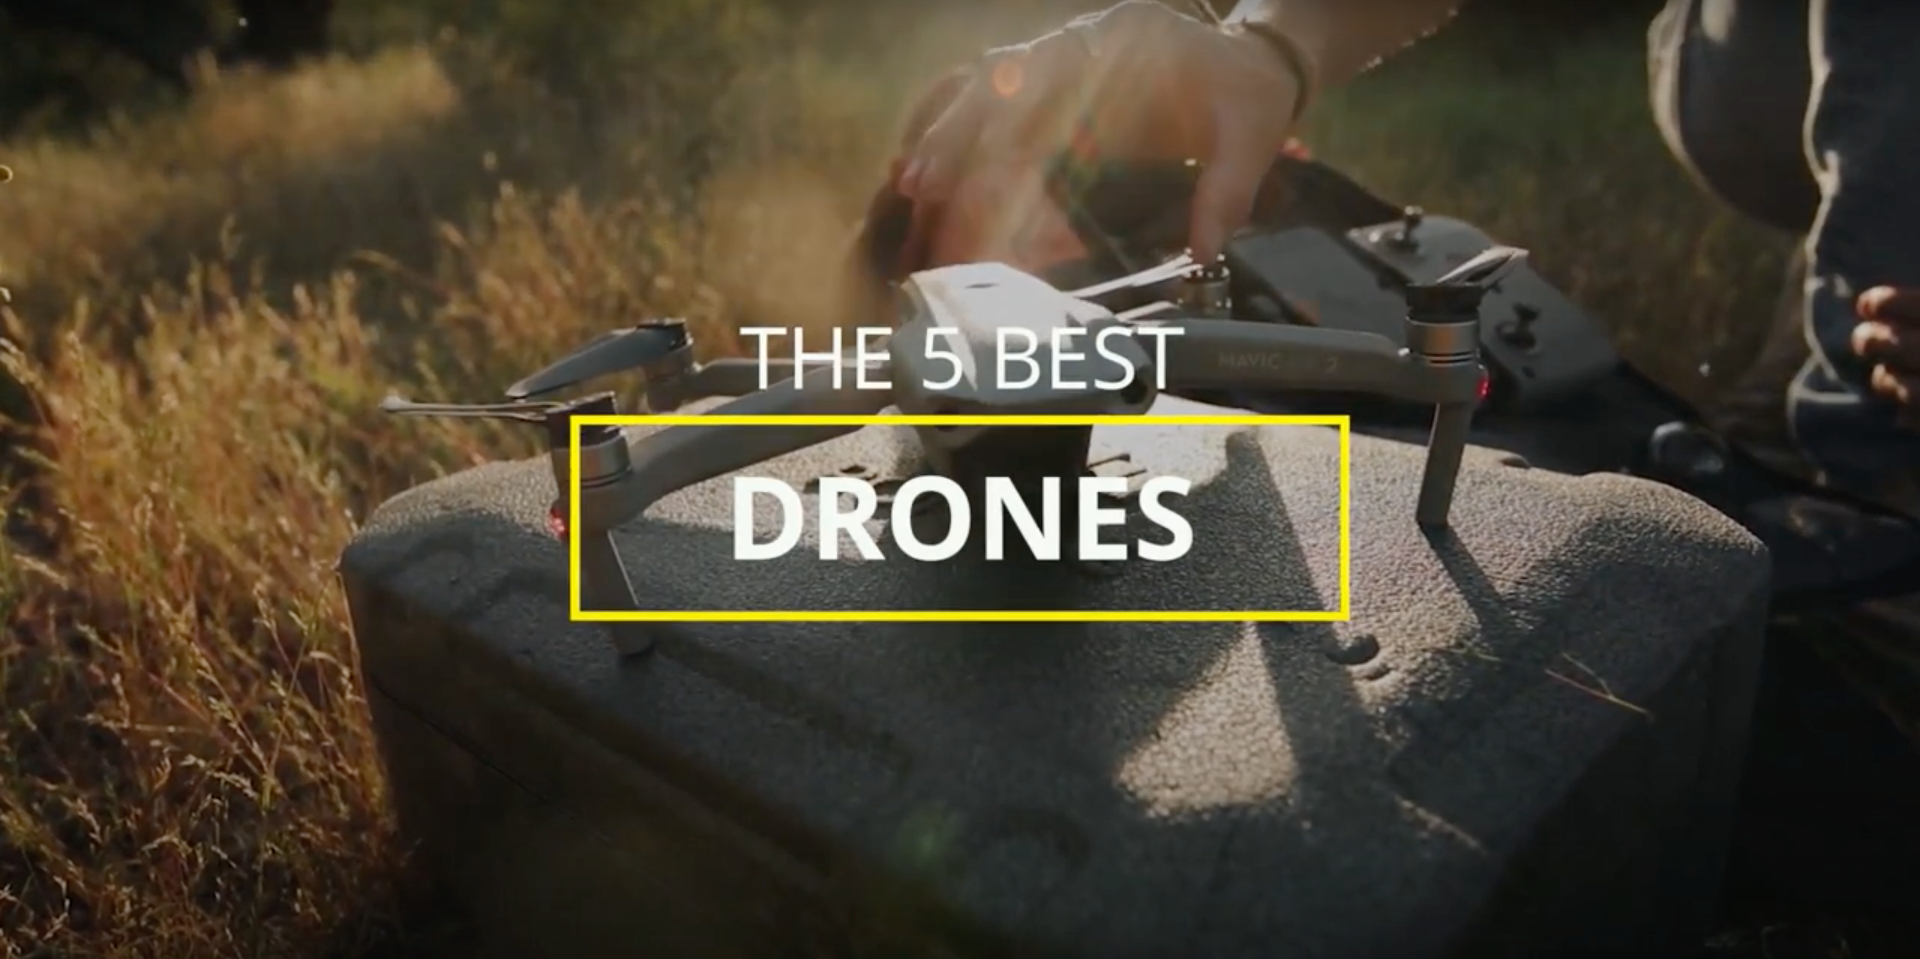 5 Best Drones in 2021